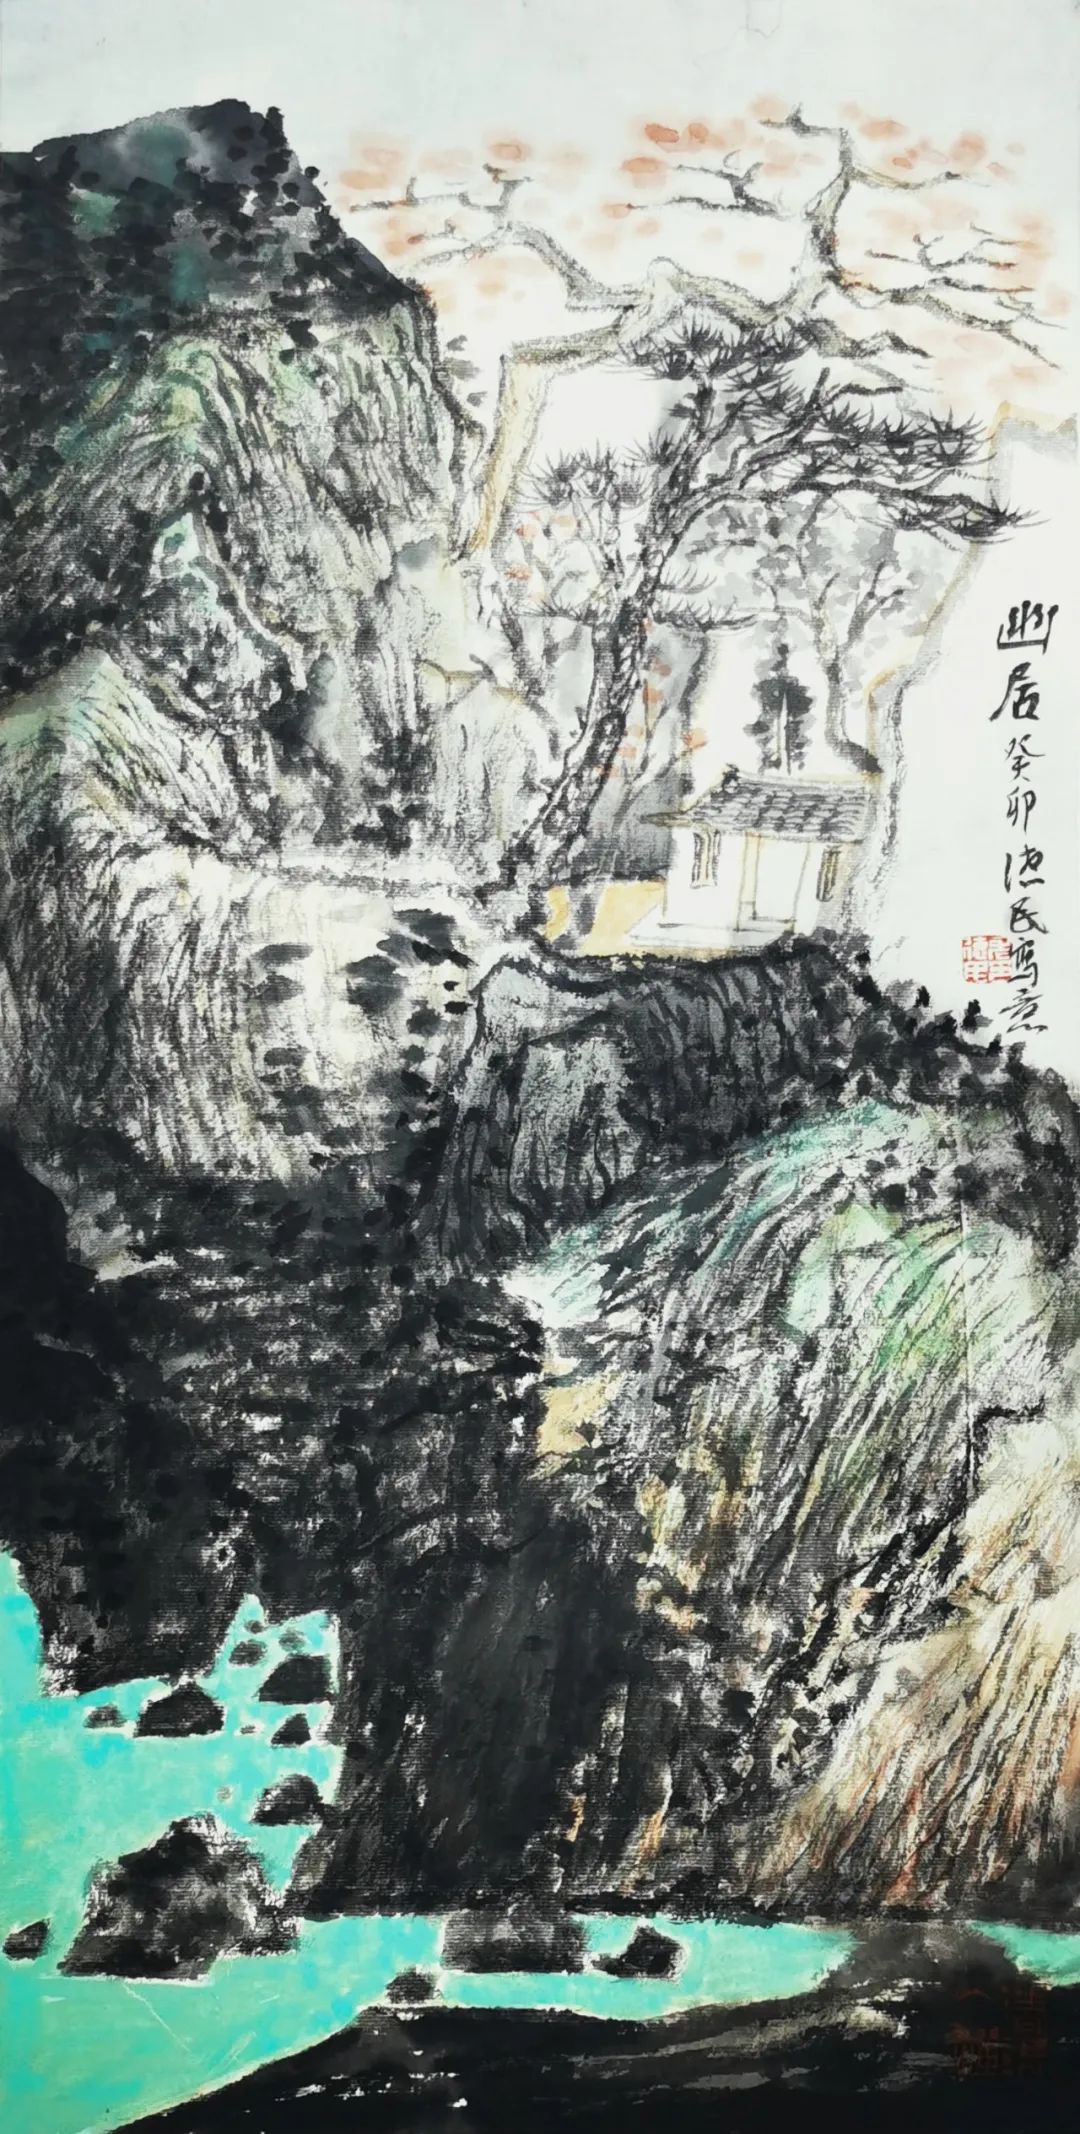 著名画家尤德民应邀参展“墨香溢三月——中国画名家（海南）邀请展”